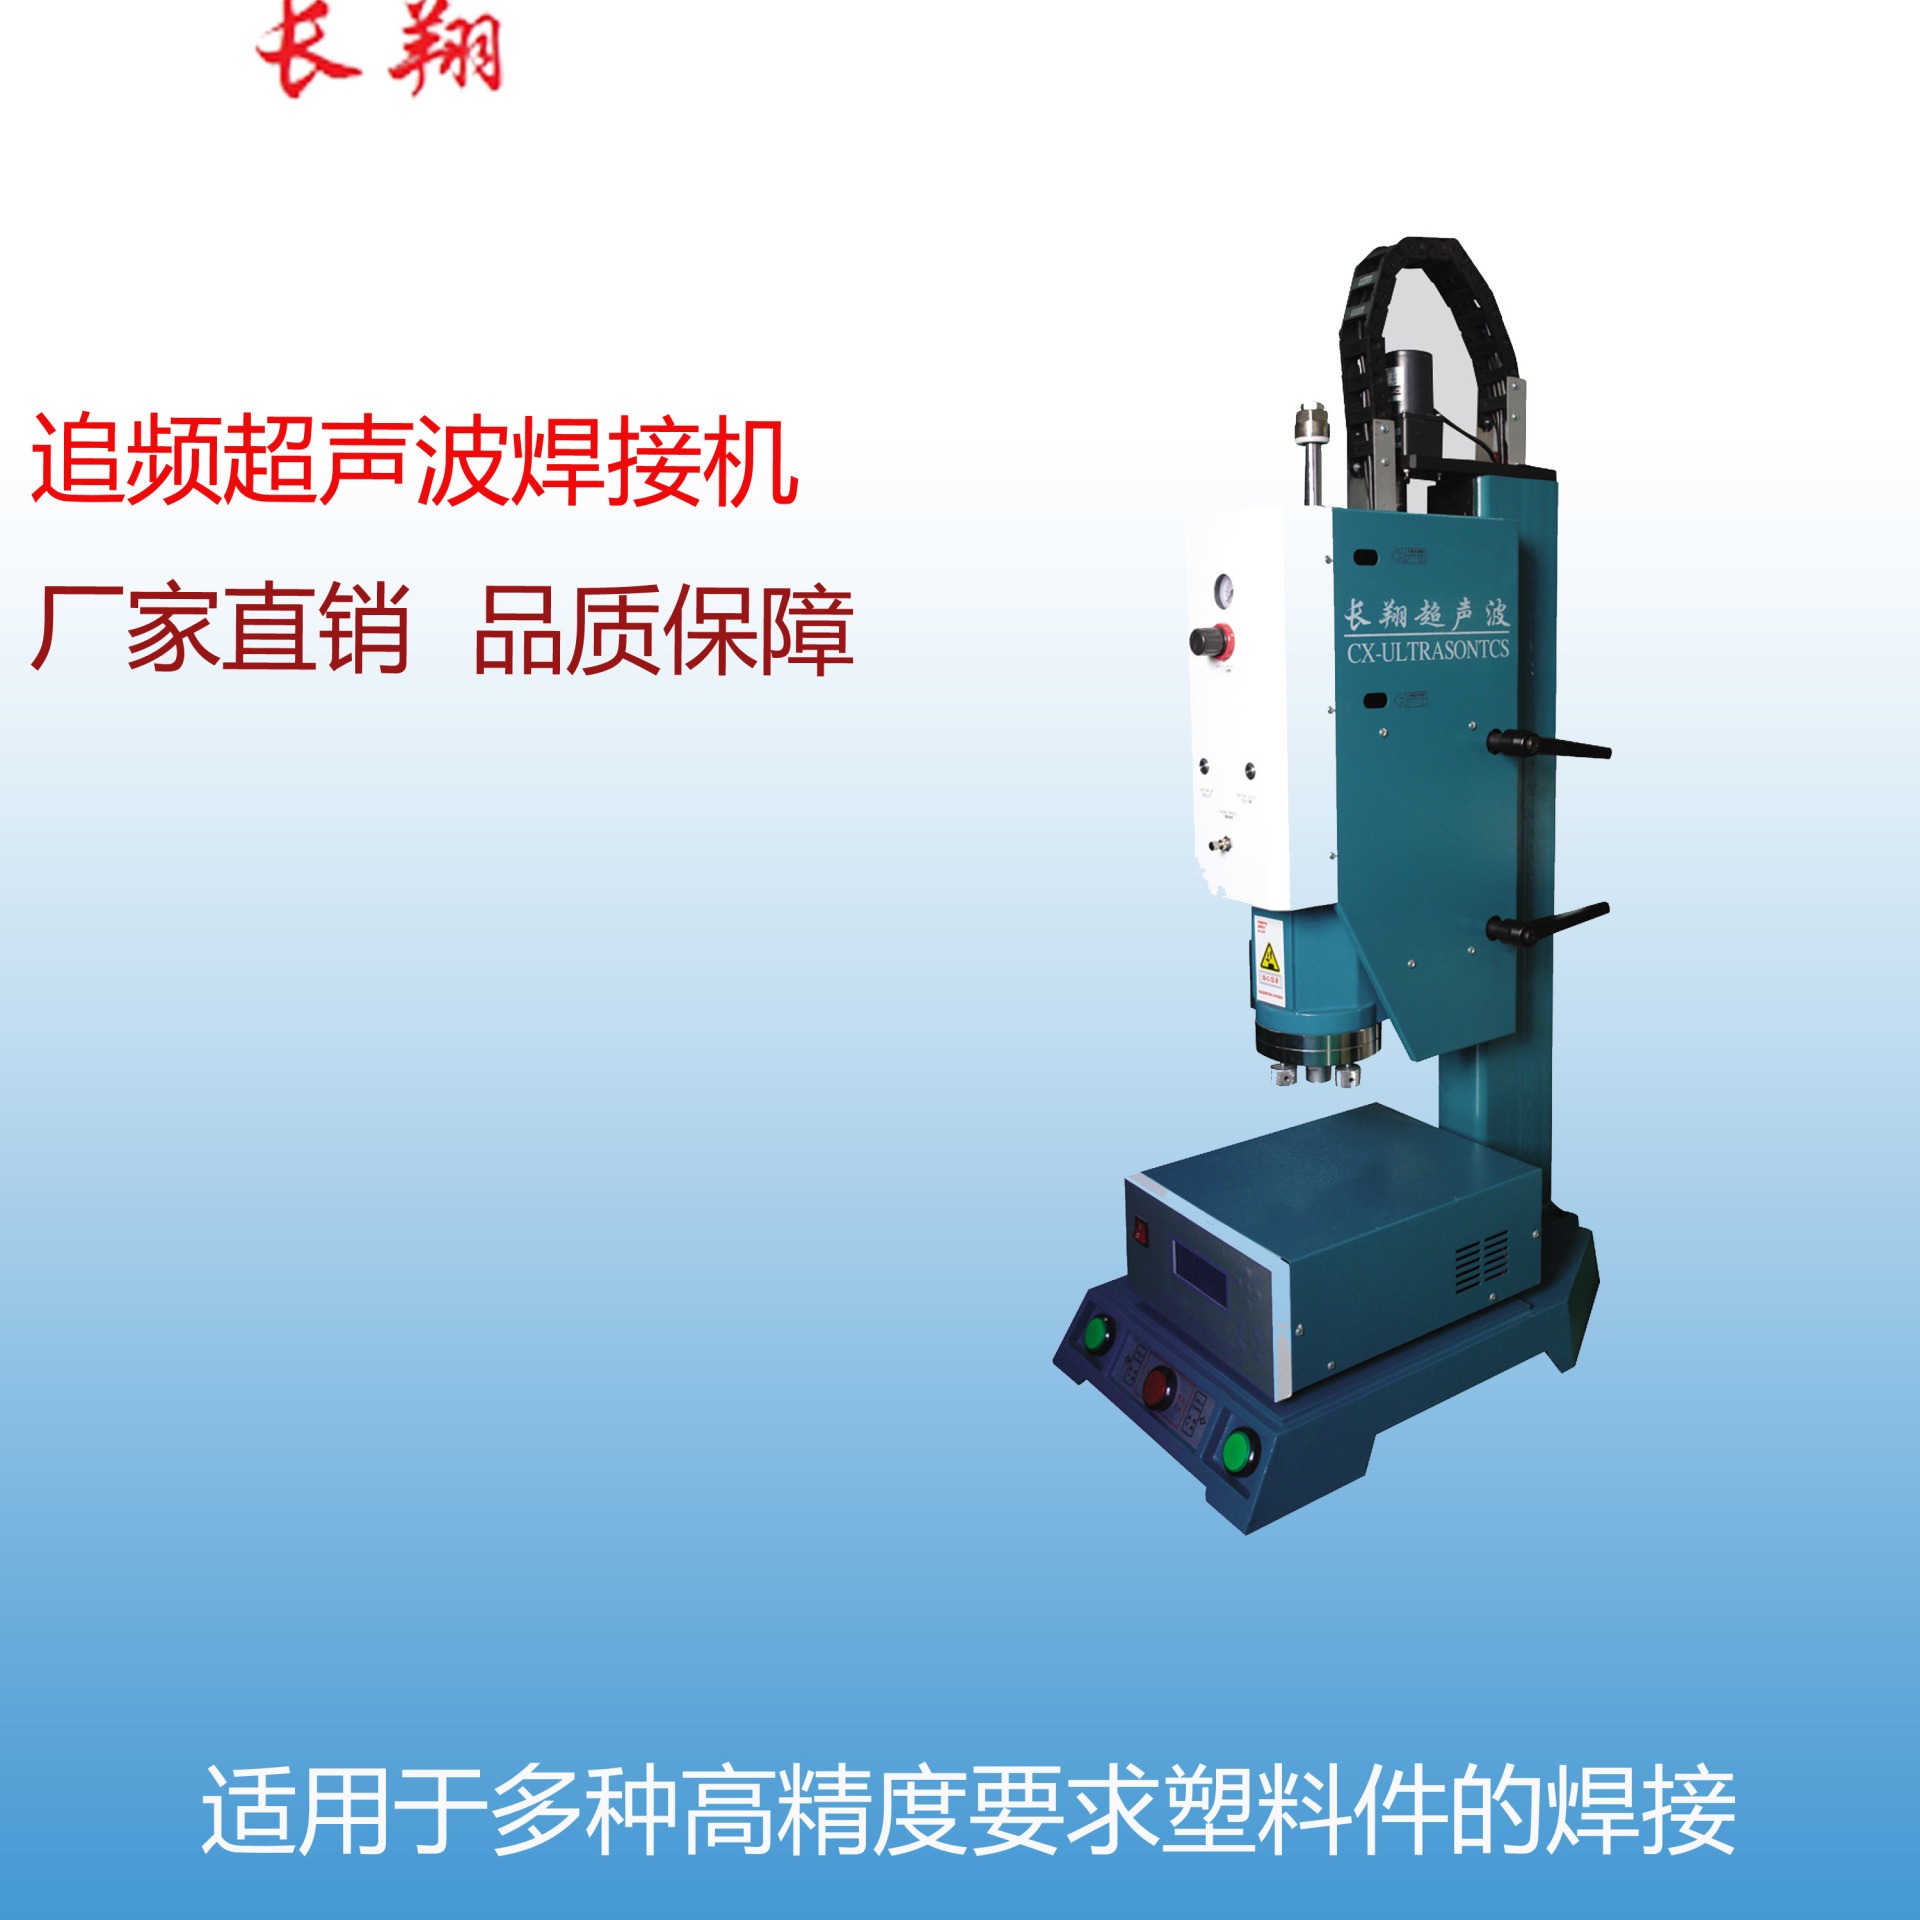 北京超声波焊接机注塑件超声波焊接设备图片